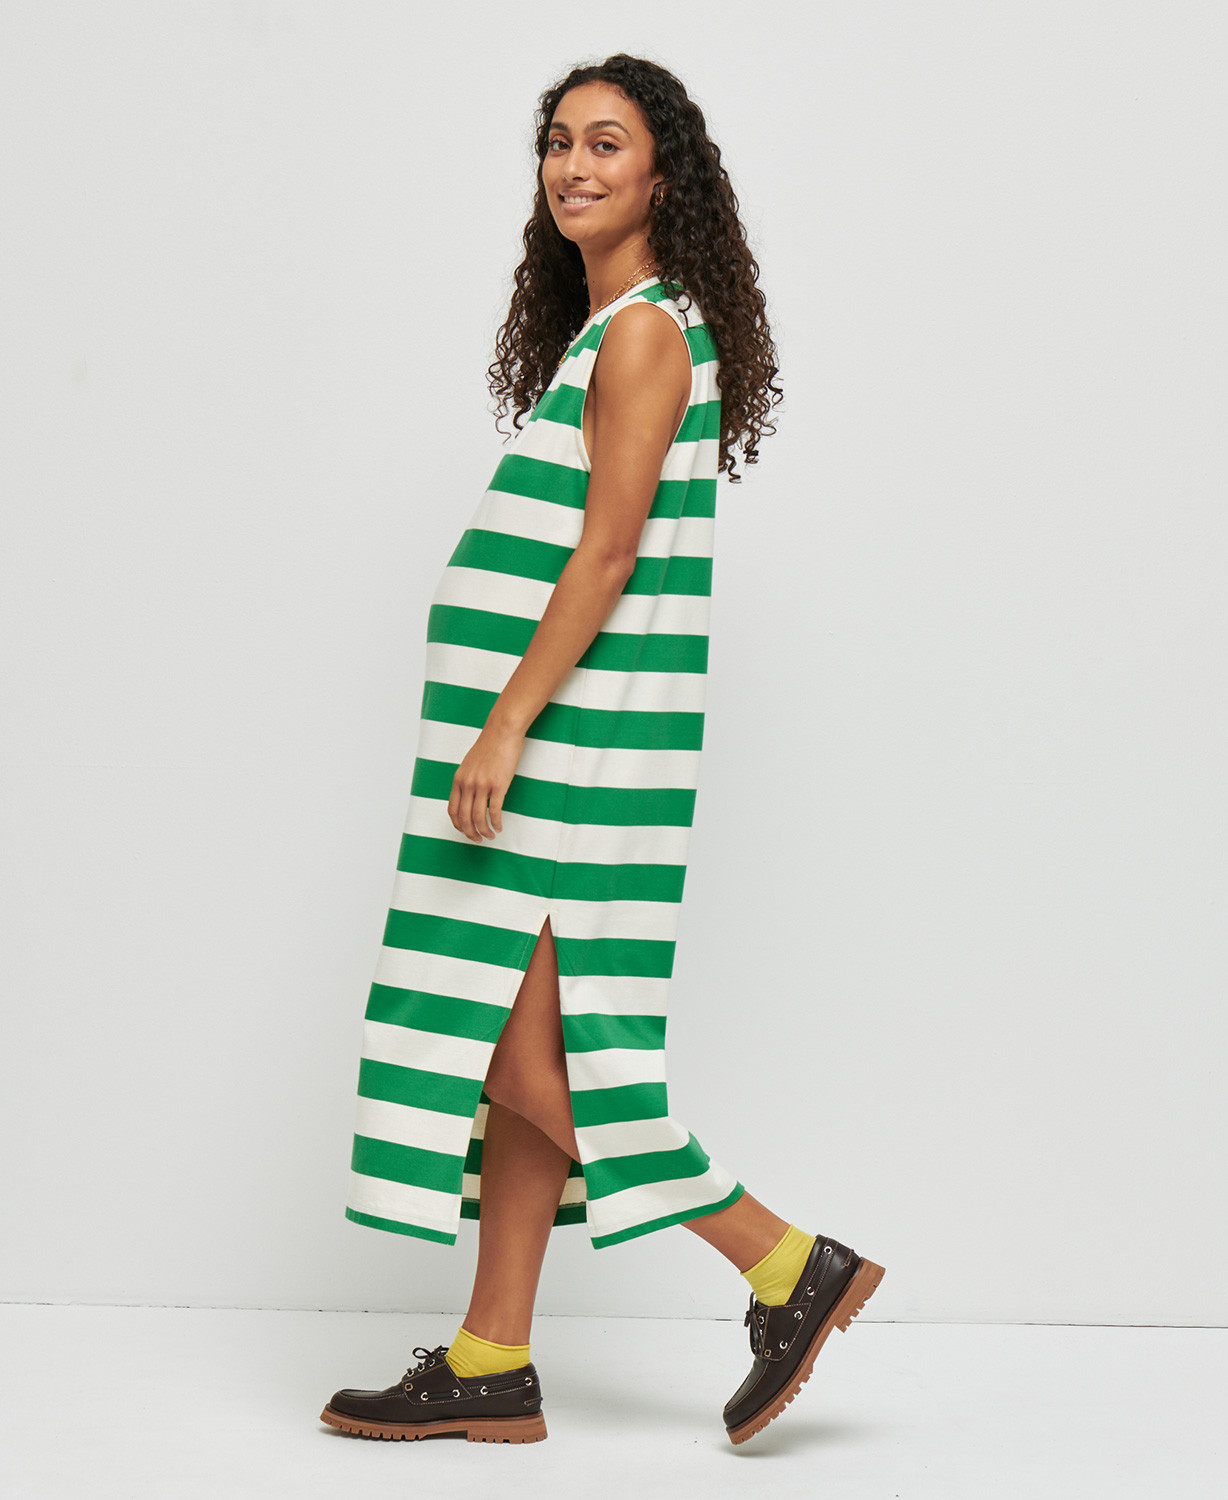 Charlie Green/Ecru Stripes Cotton Pregnancy Dress